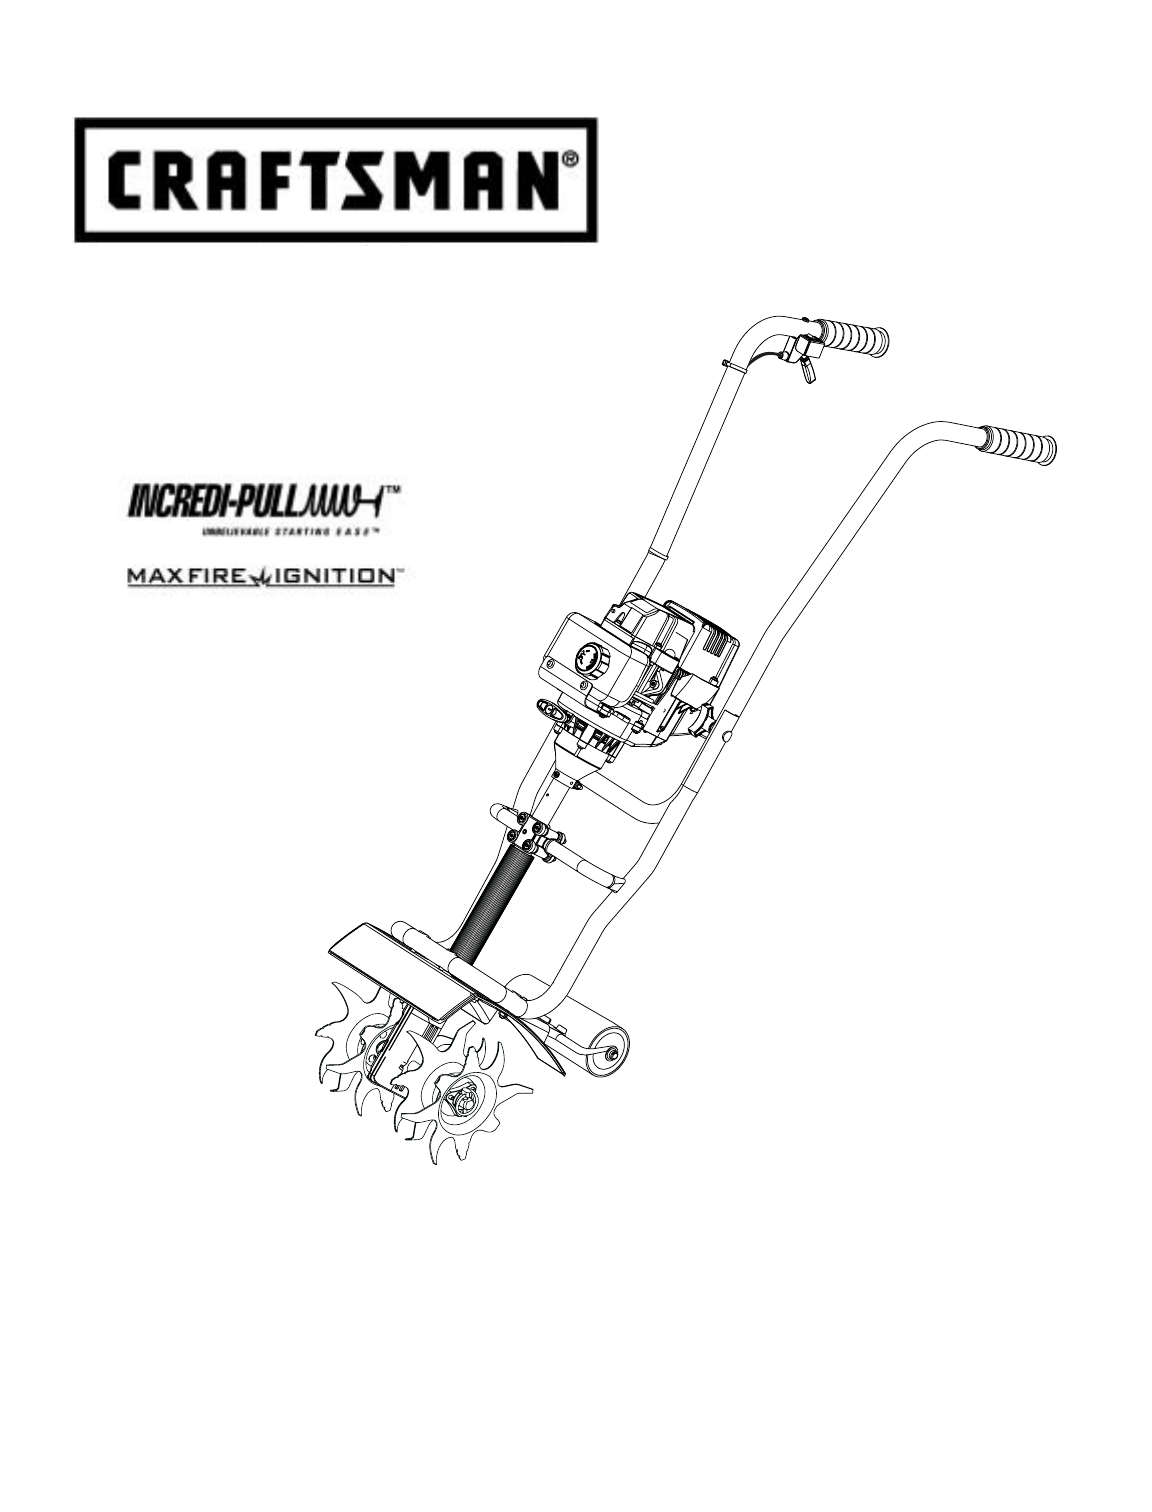 Craftsman 4 Cycle Tiller Manual